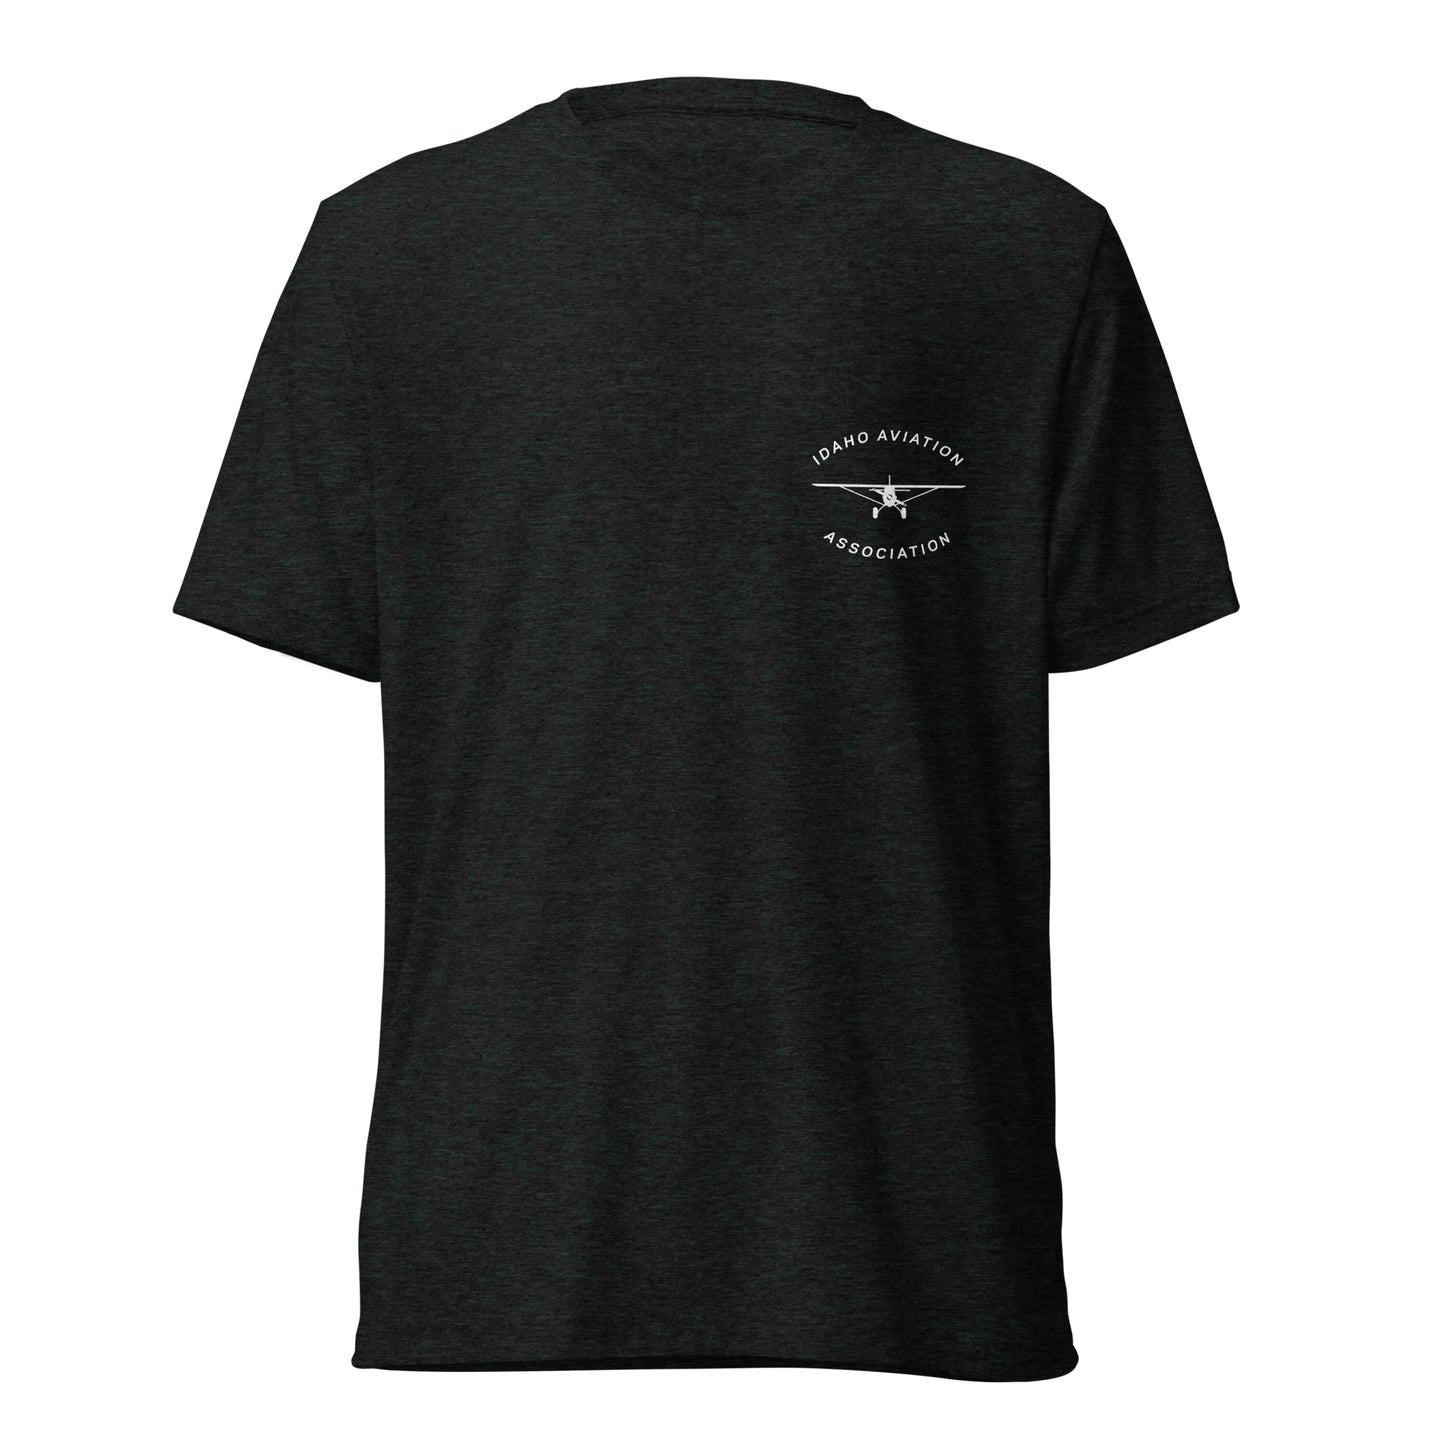 Fly Idaho Supercub Light-Weight T-Shirt with White IAA Logo